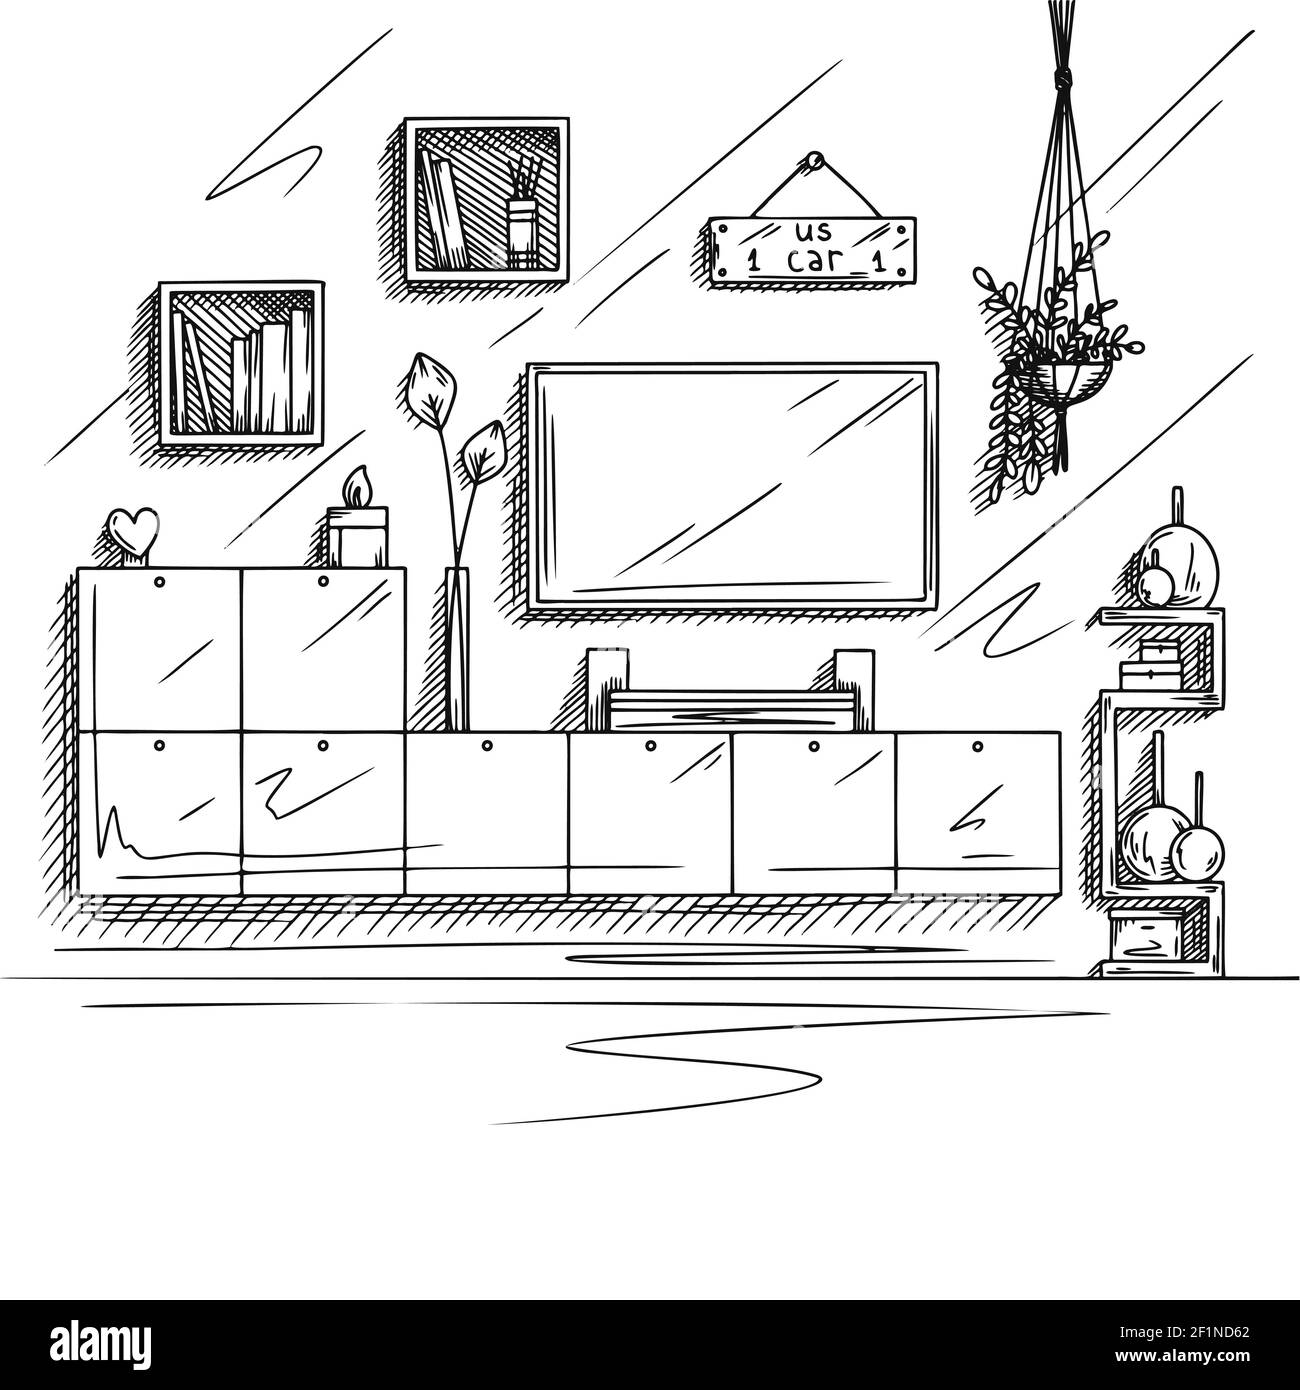 Une esquisse d'une salle de télévision. Meubles de télévision, autres éléments intérieurs. Illustration vectorielle Illustration de Vecteur